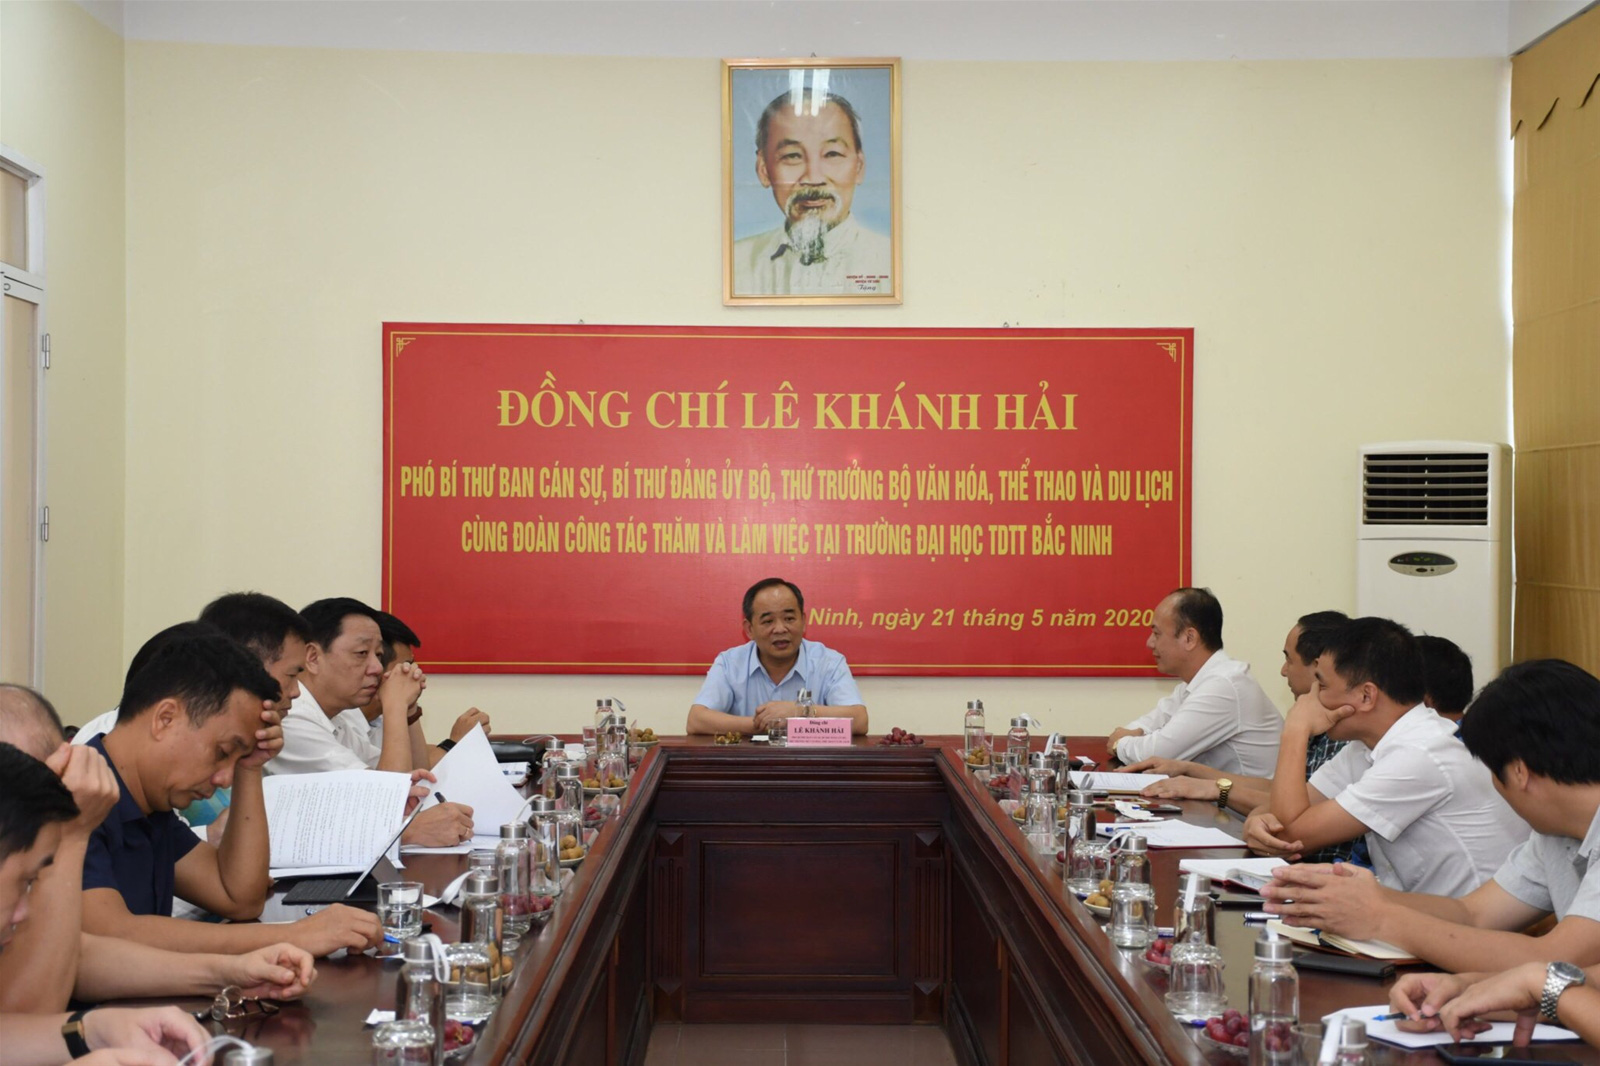 Thứ trưởng Lê Khánh Hải thăm và làm việc tại Trường Đại học TDTT Bắc Ninh - Ảnh 1.